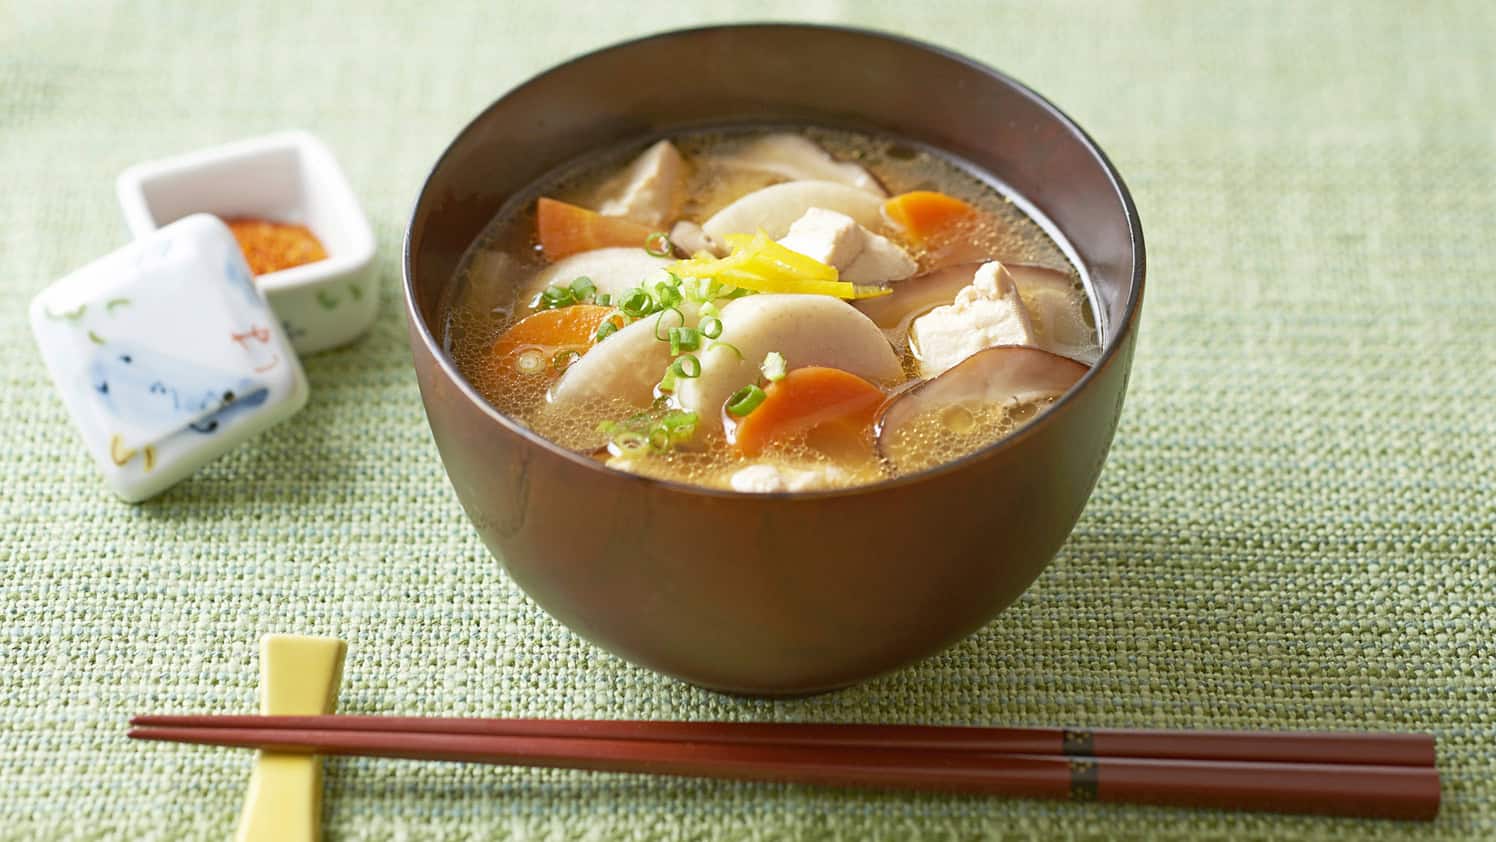 vegan-friendly soup けんちん汁 kenchinjiru